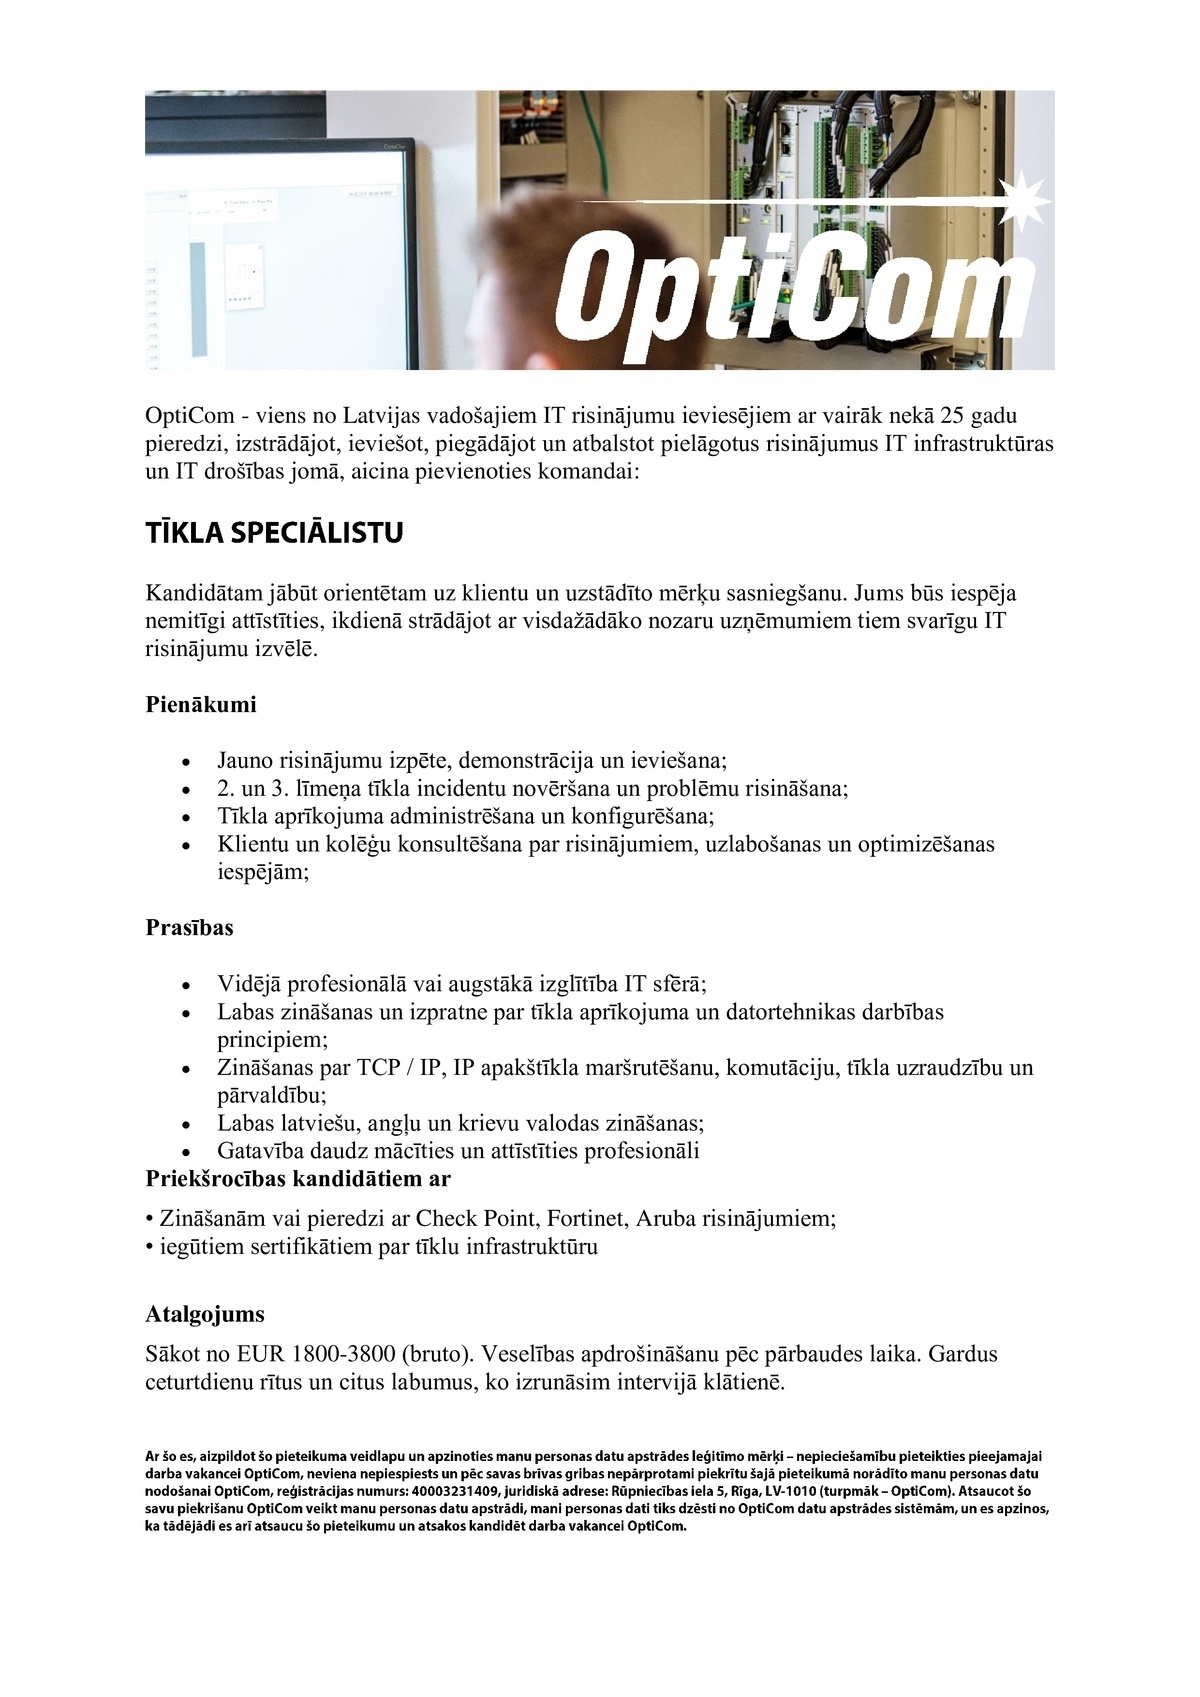 OptiCom, SIA Tīkla speciālists/-e